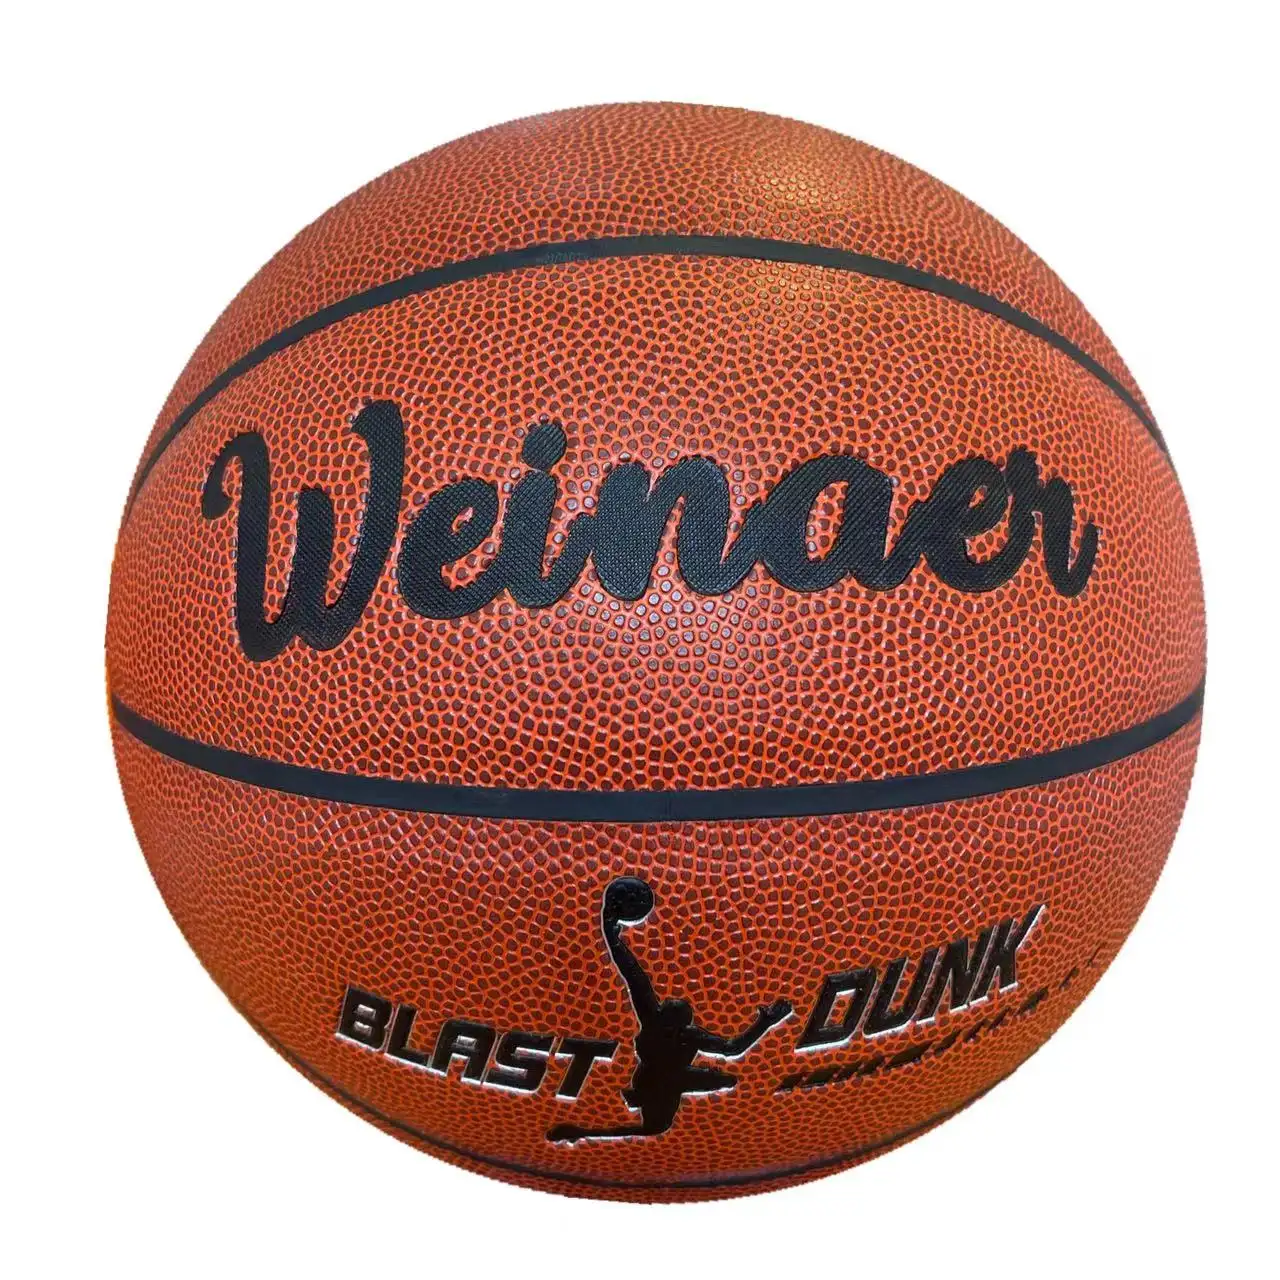 高品質のカスタムロゴプリントバスケットボール、サイズ7 PUコンポジットレザーマッチバスケットボールボール